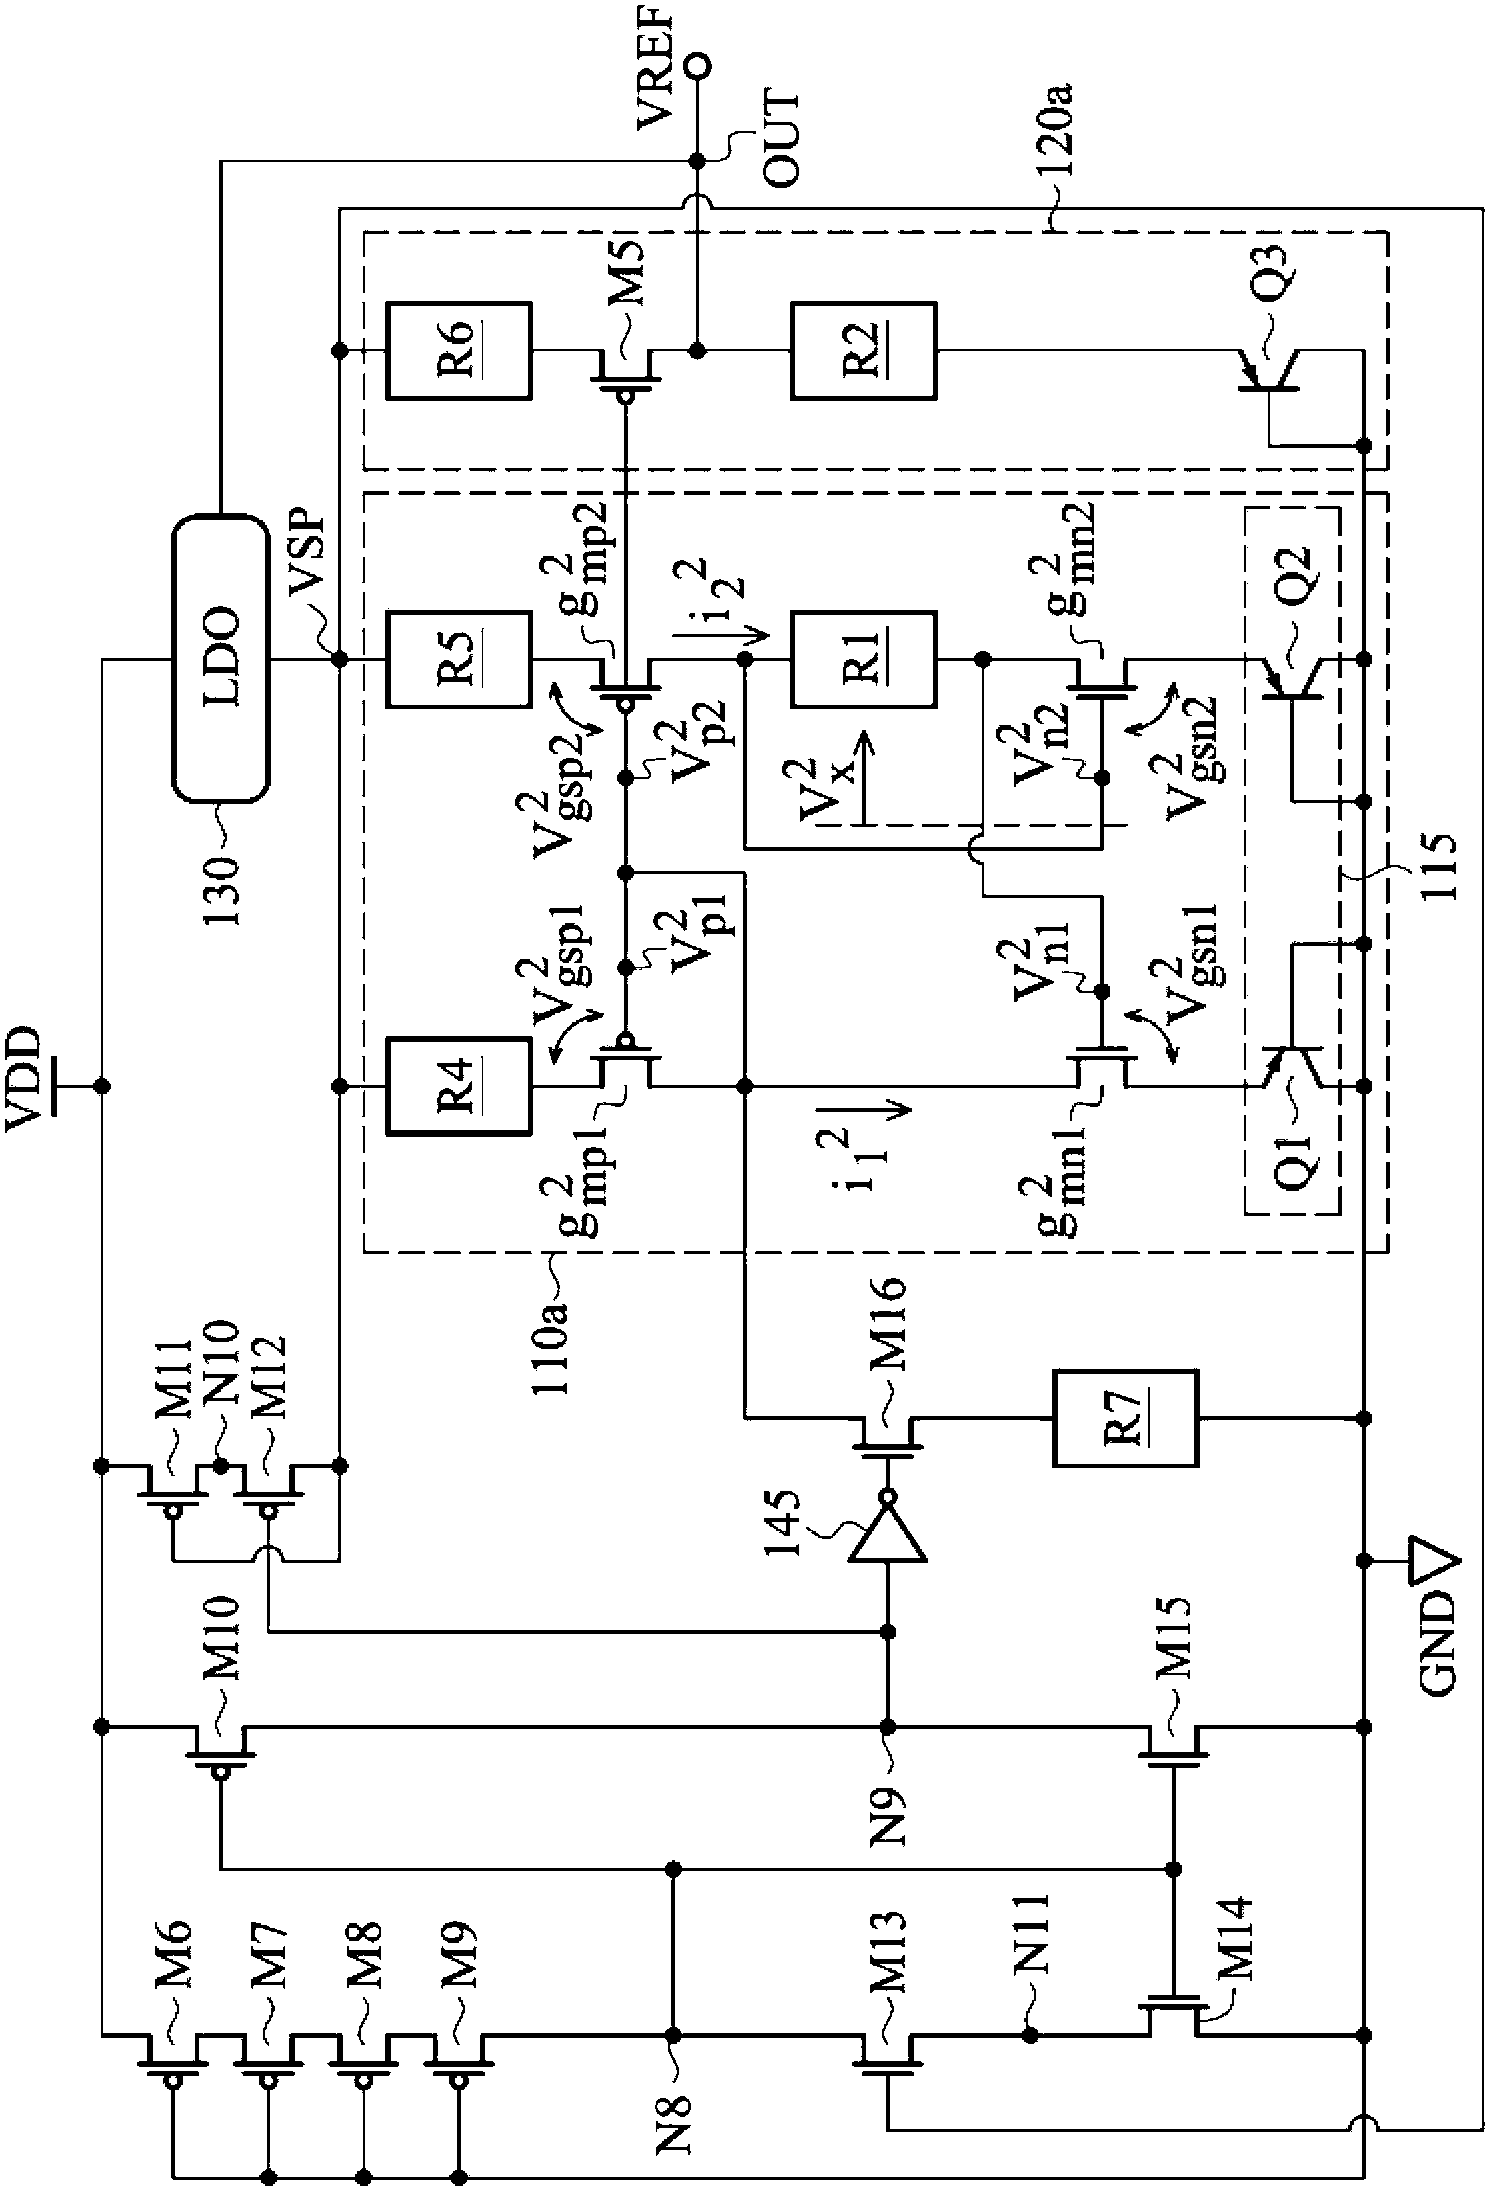 Bandgap circuit